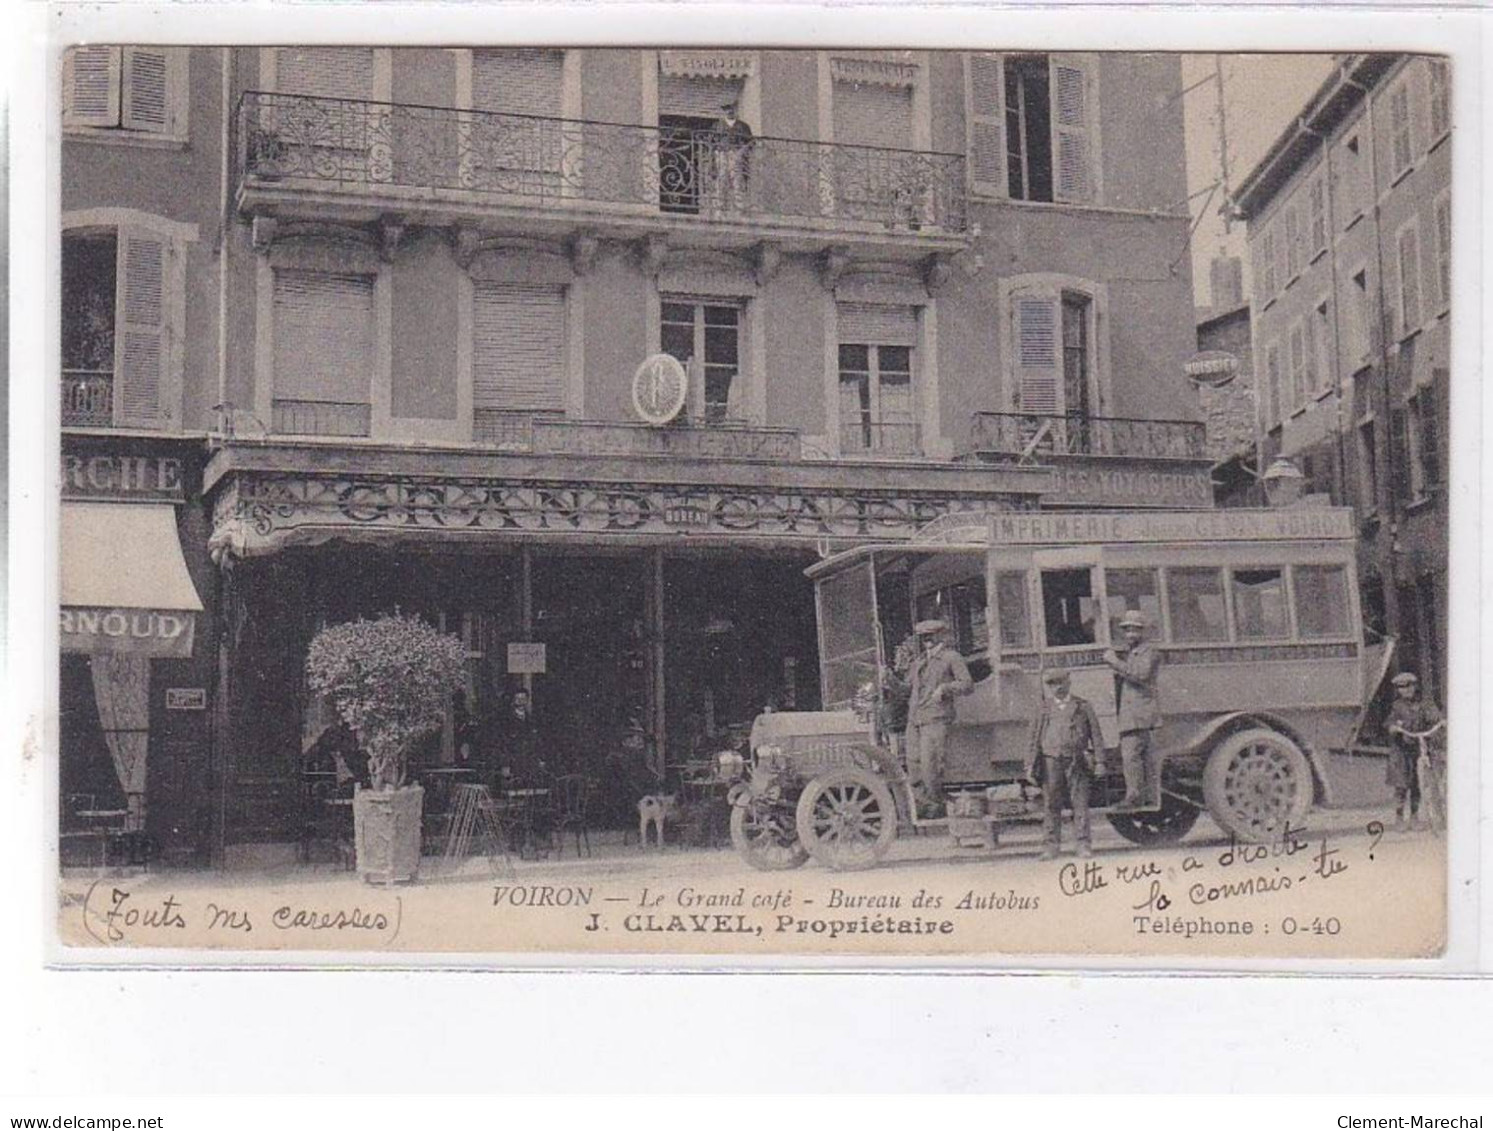 VOIRON: Le Grand Café, Bureau Des Autobus - état - Voiron